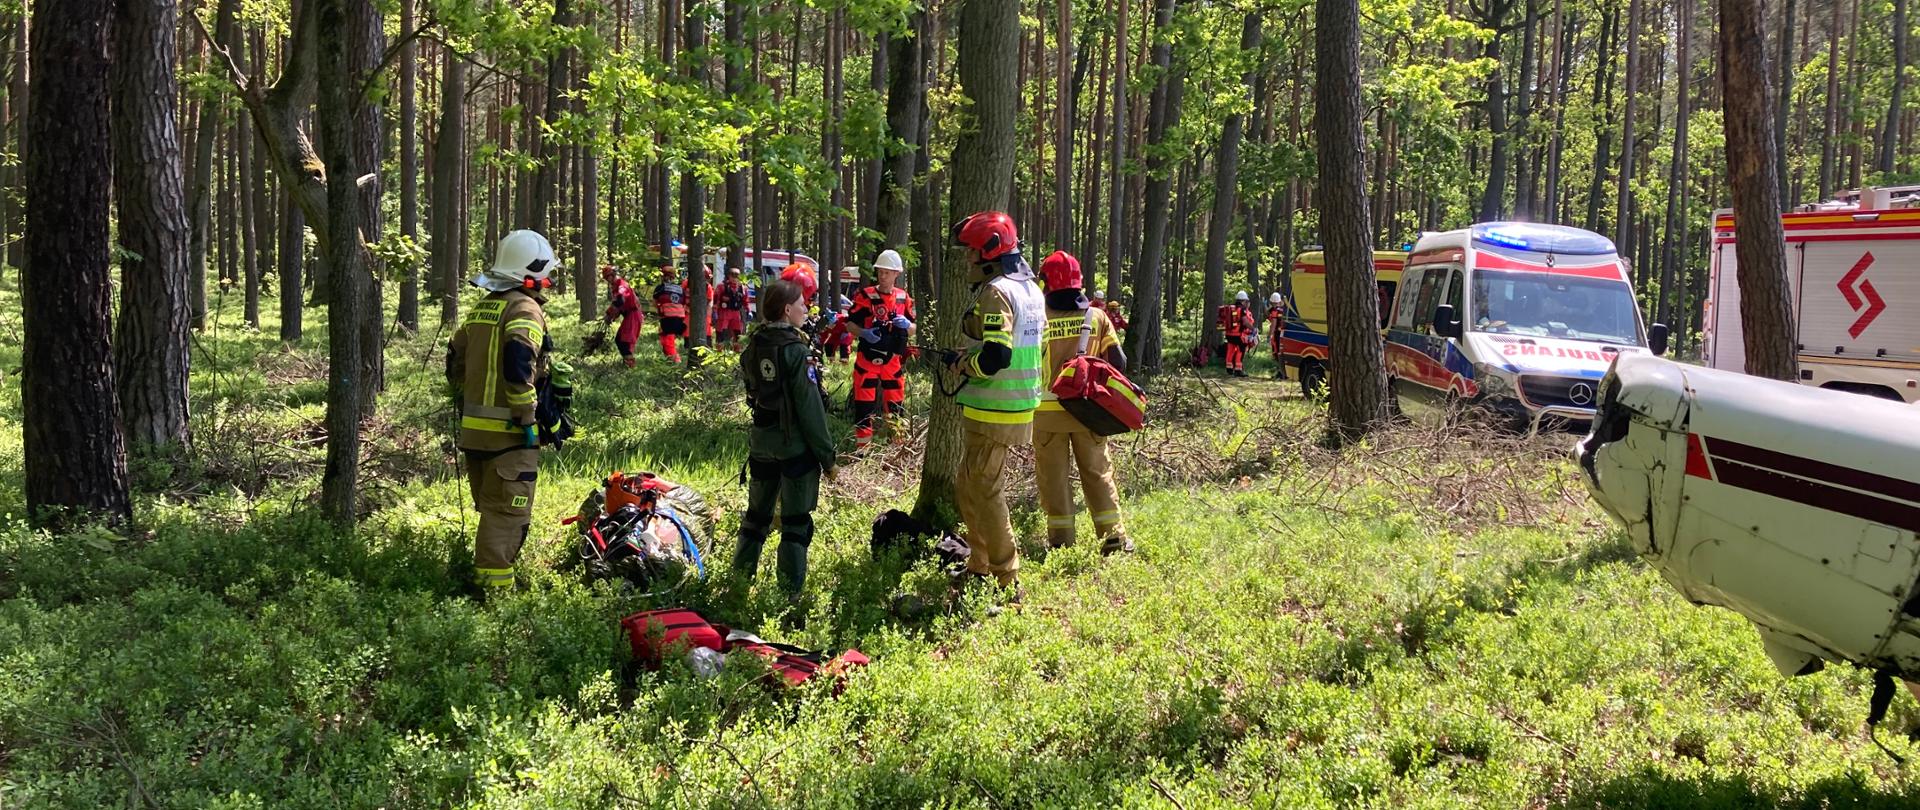 Teren działań ratowniczych - tereny leśne, widoczny wrak samolotu oraz ratownicy prowadzący działania ratownicze. 